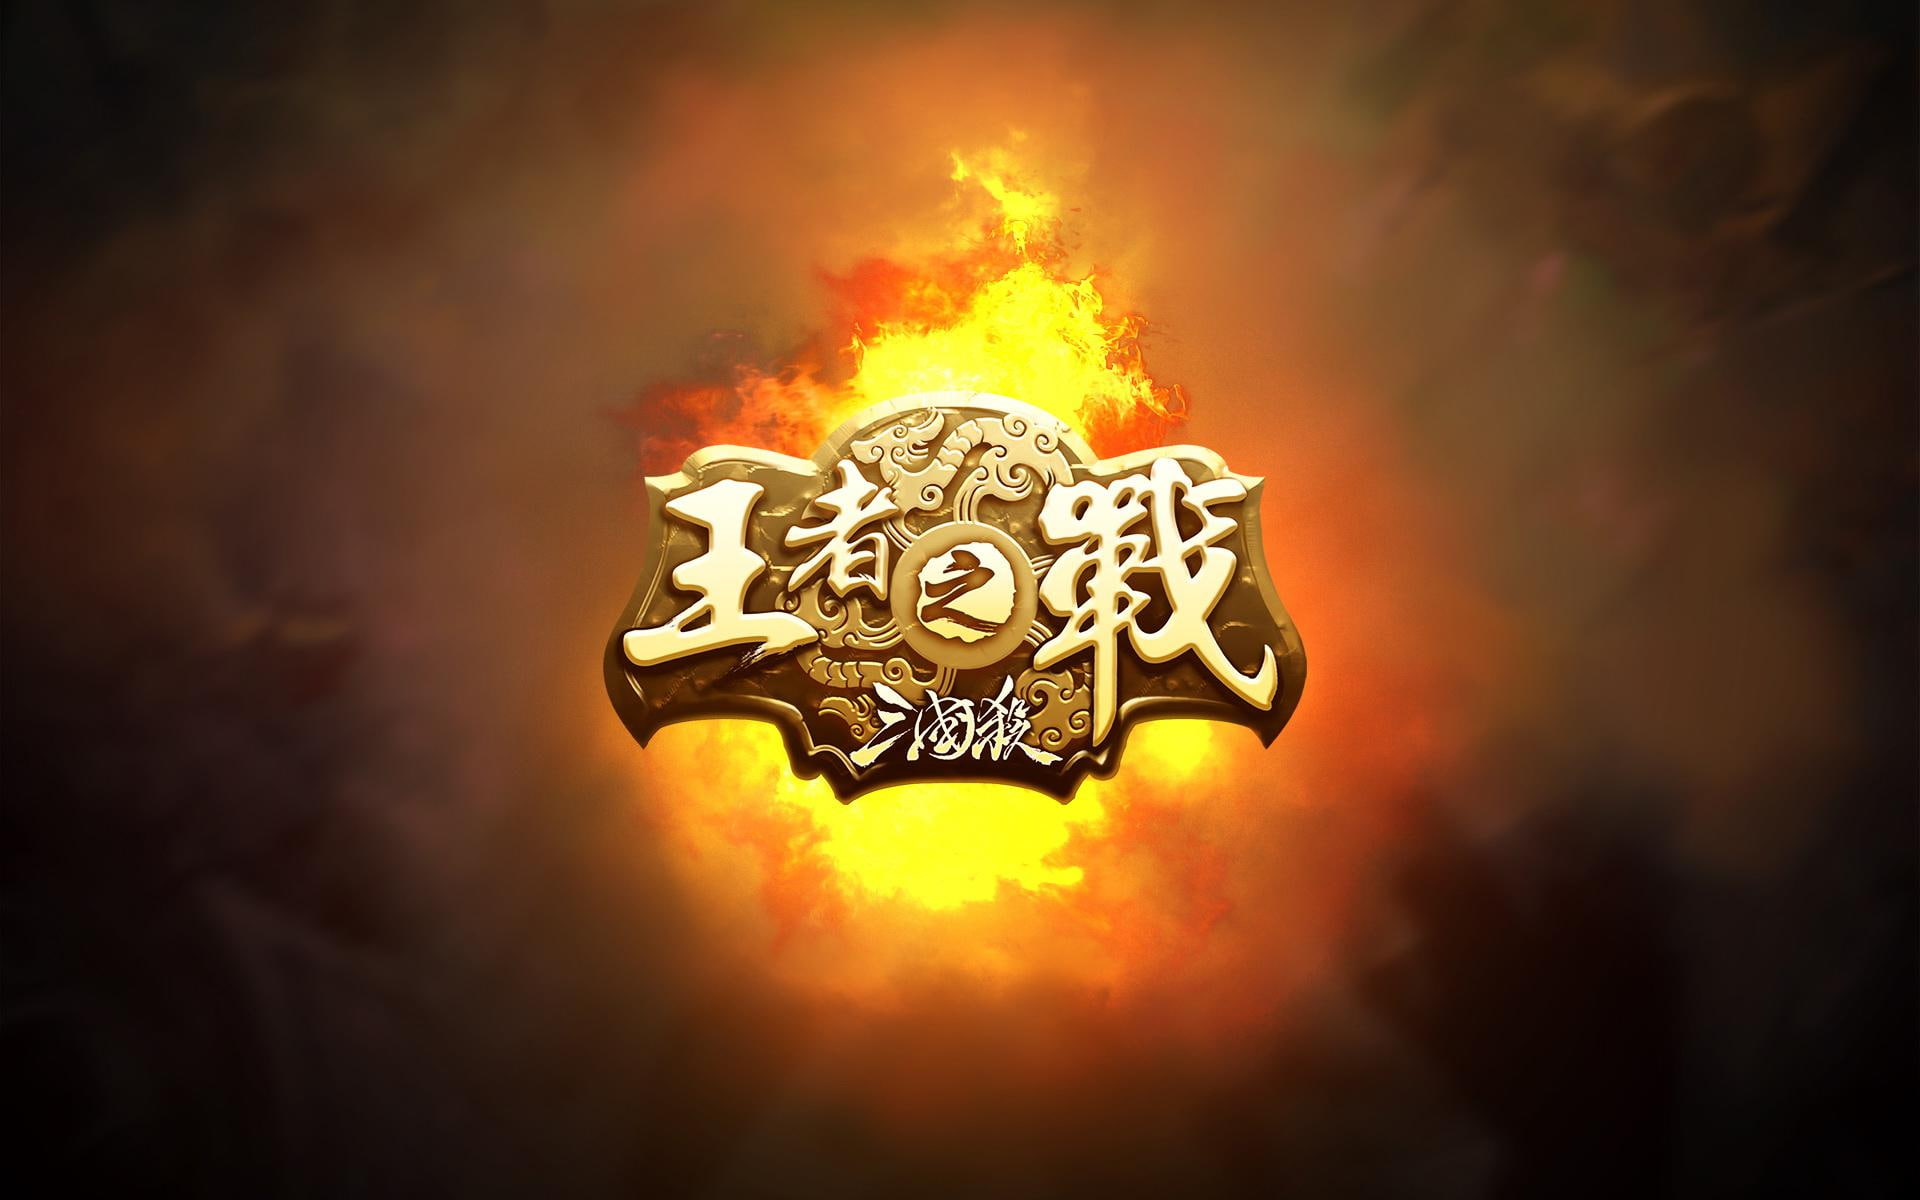 Zhan Wang, King of Battle, kanji scripted logo